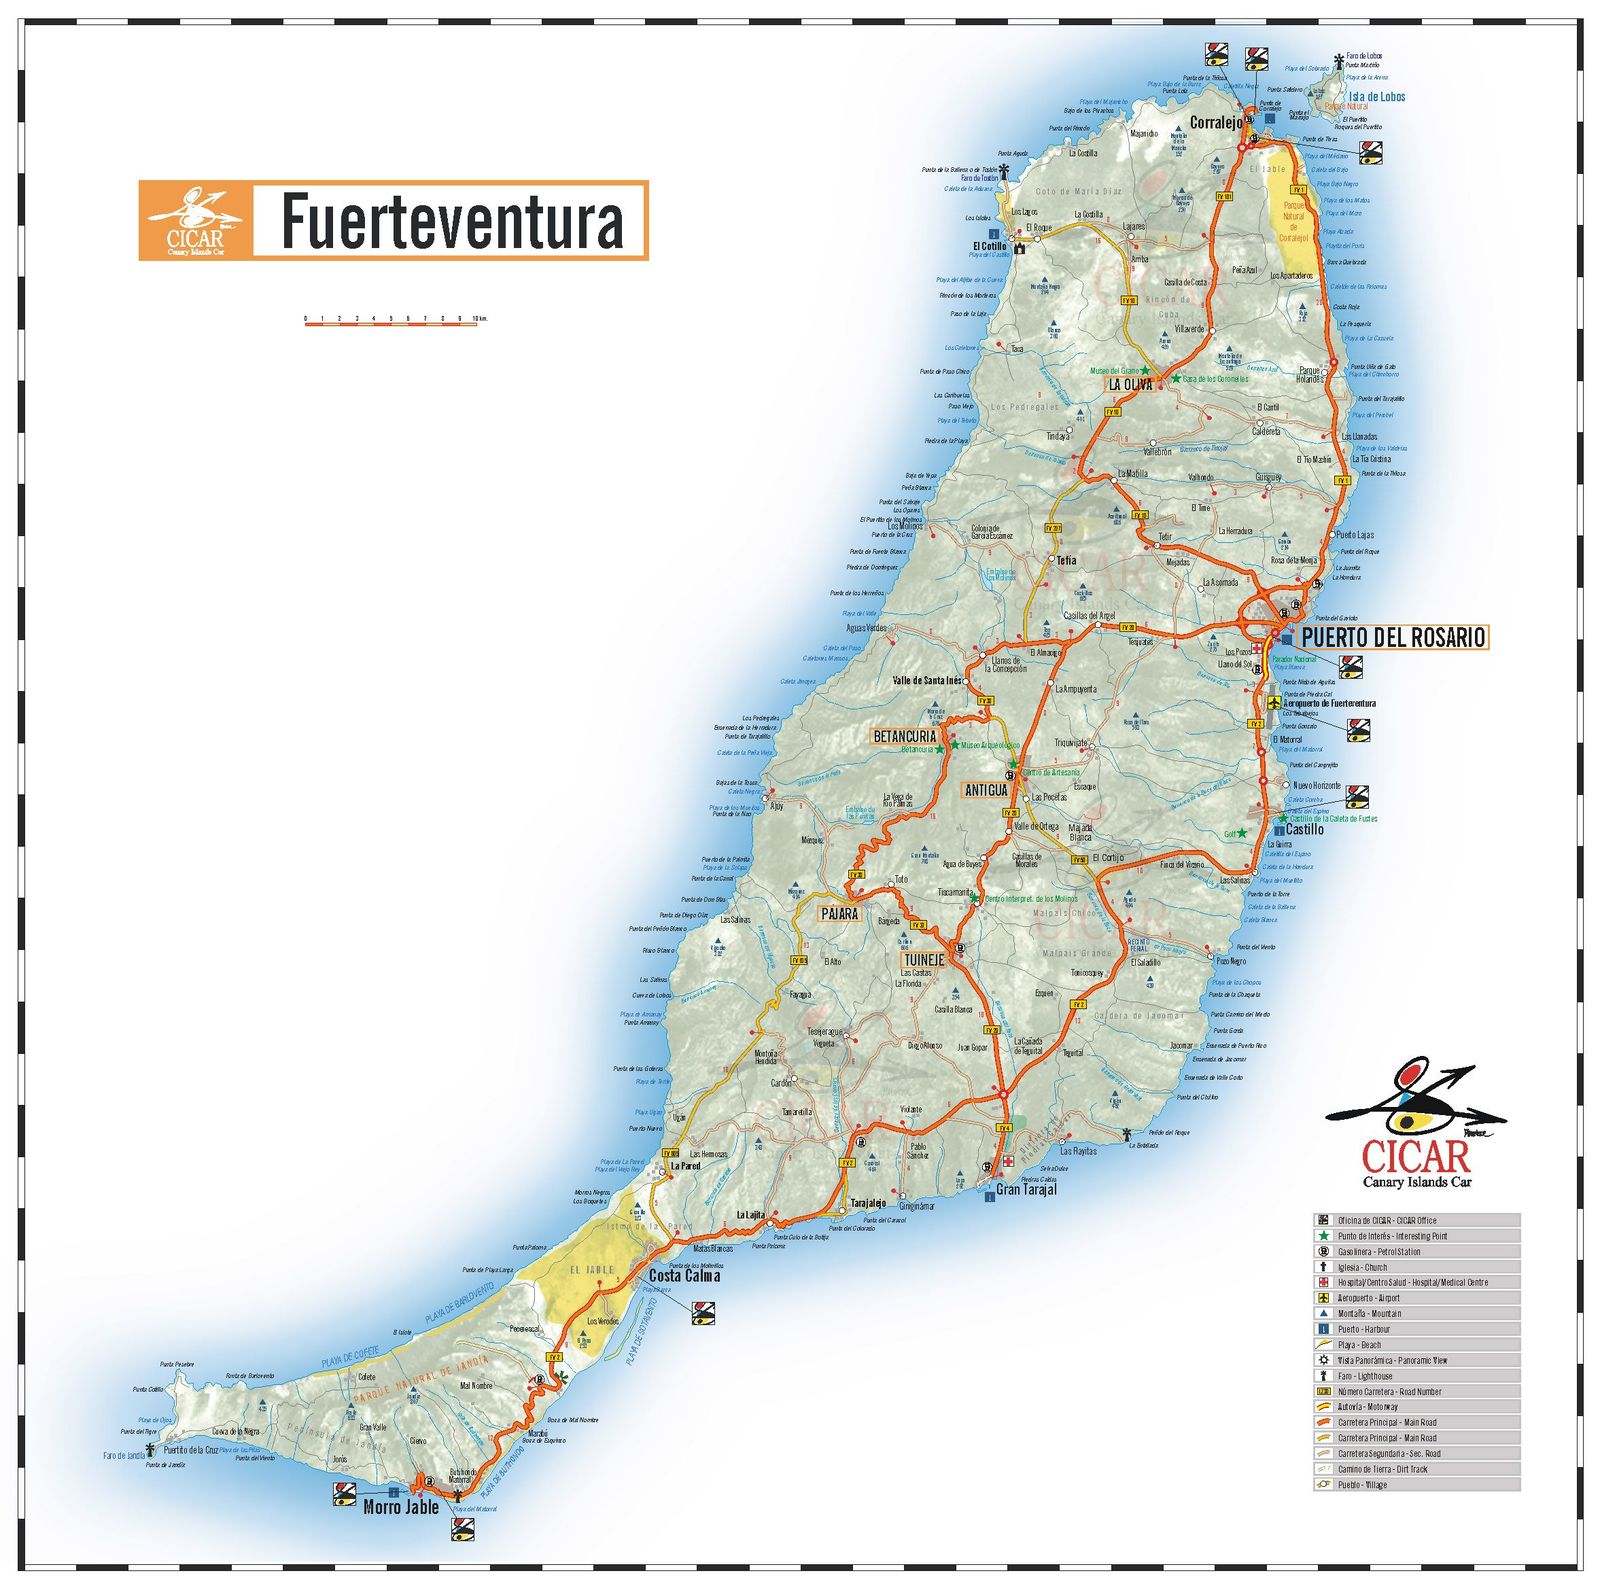 fuerteventura-map.jpg